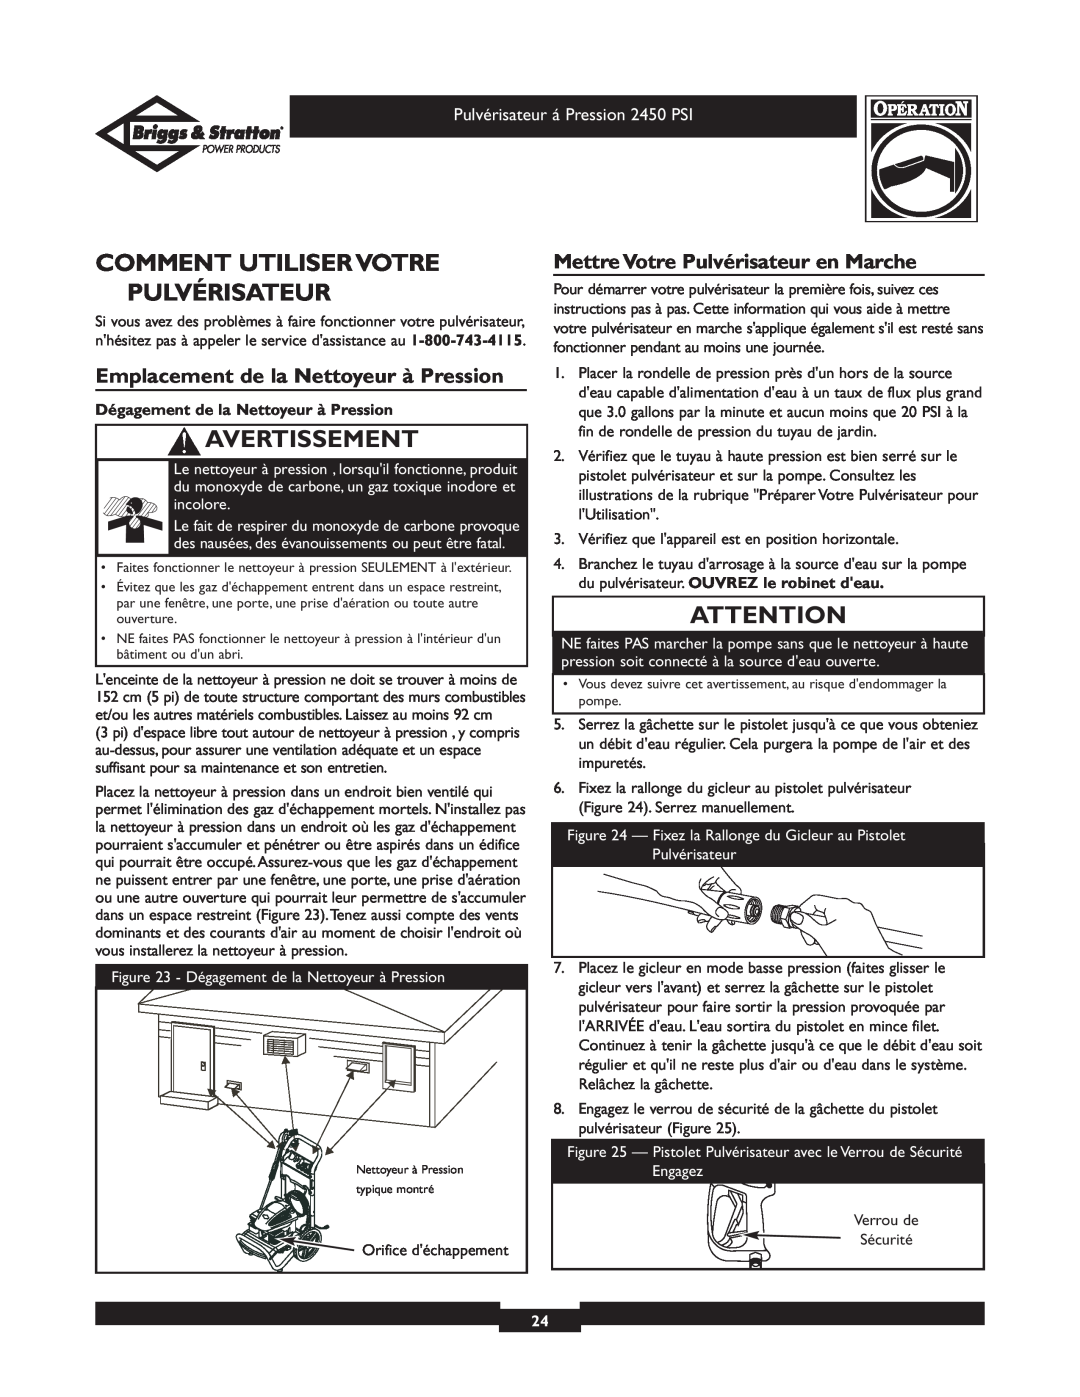 Briggs & Stratton 020219 Comment Utiliser Votre Pulvérisateur, Emplacement de la Nettoyeur à Pression, Avertissement 